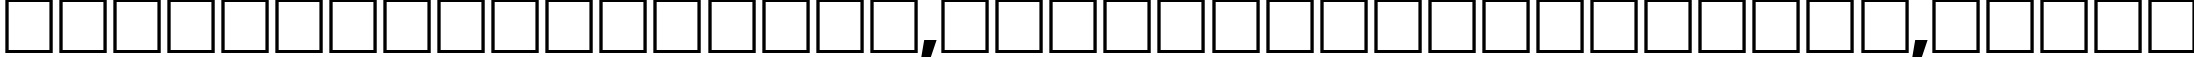 Пример написания шрифтом Bauhaus-Light текста на белорусском